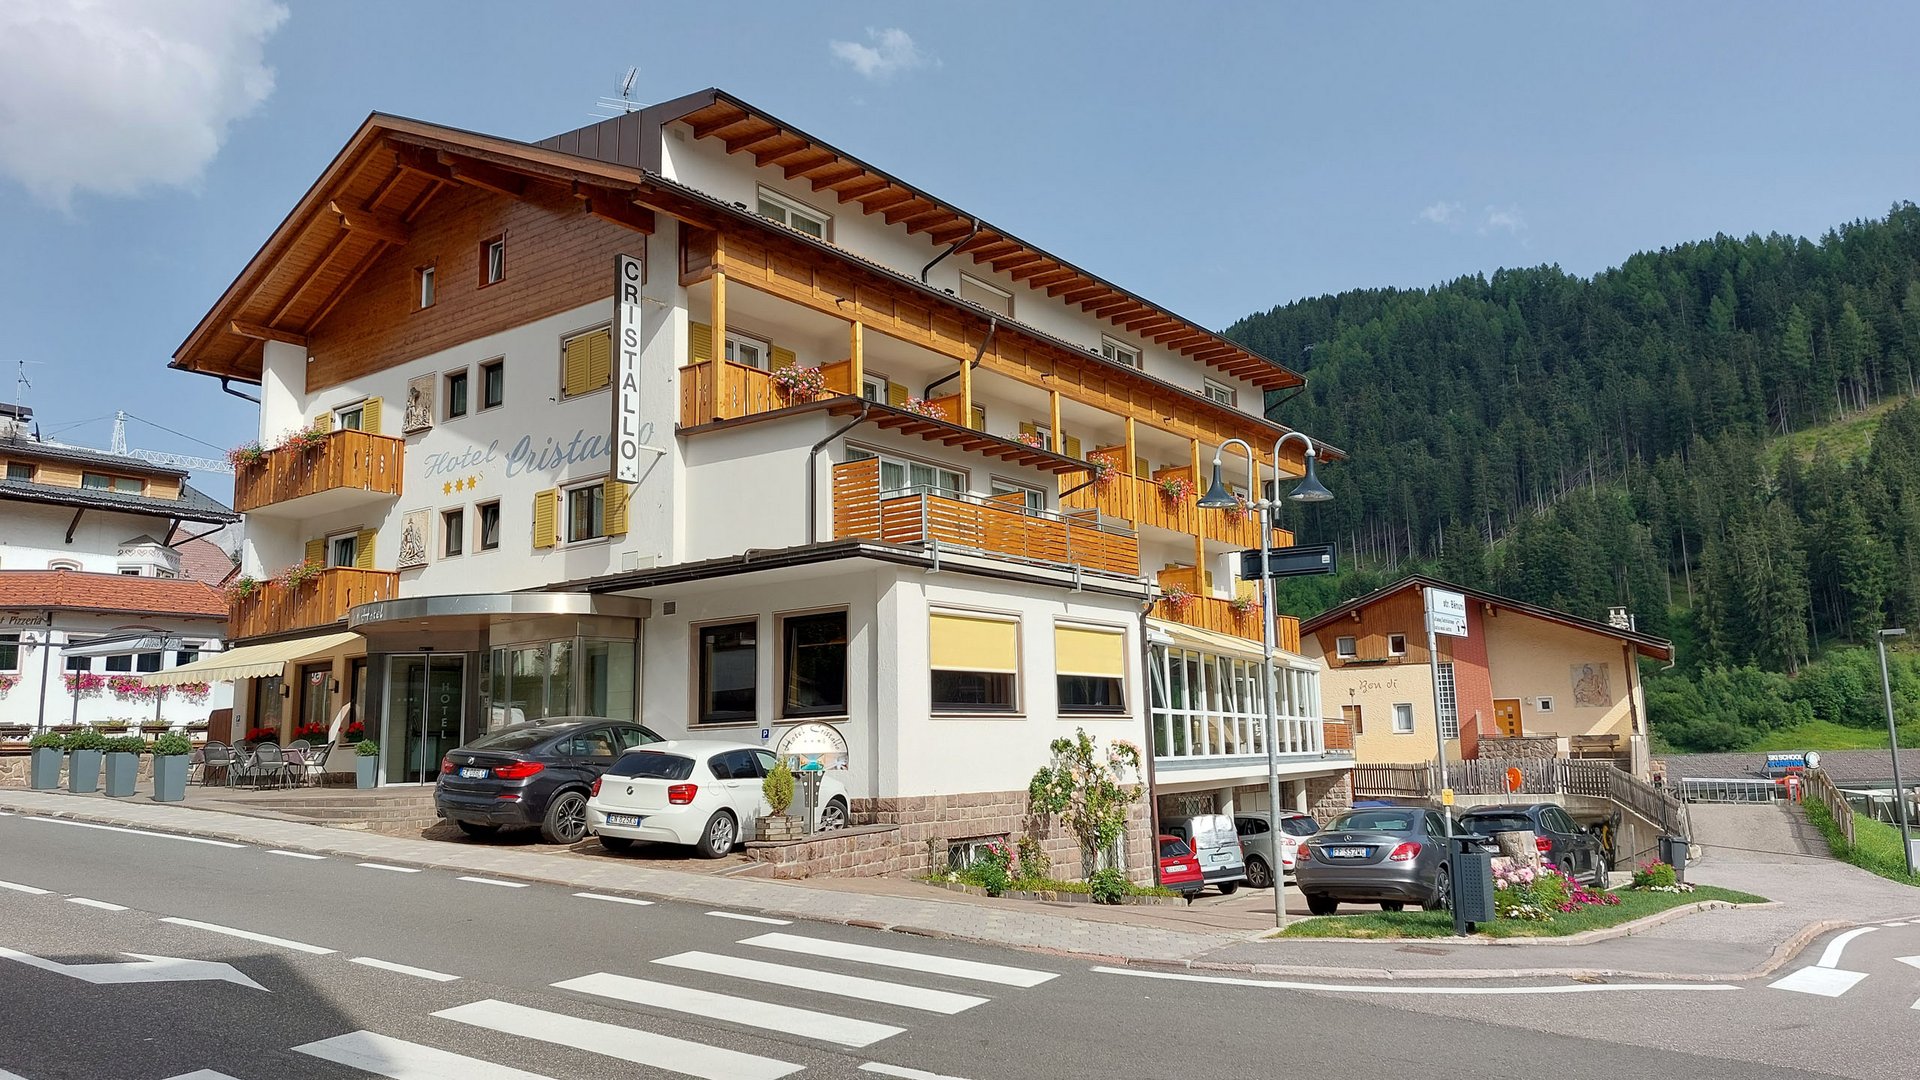 Hotel in St. Christina: Dolomiten zum Anfassen nah